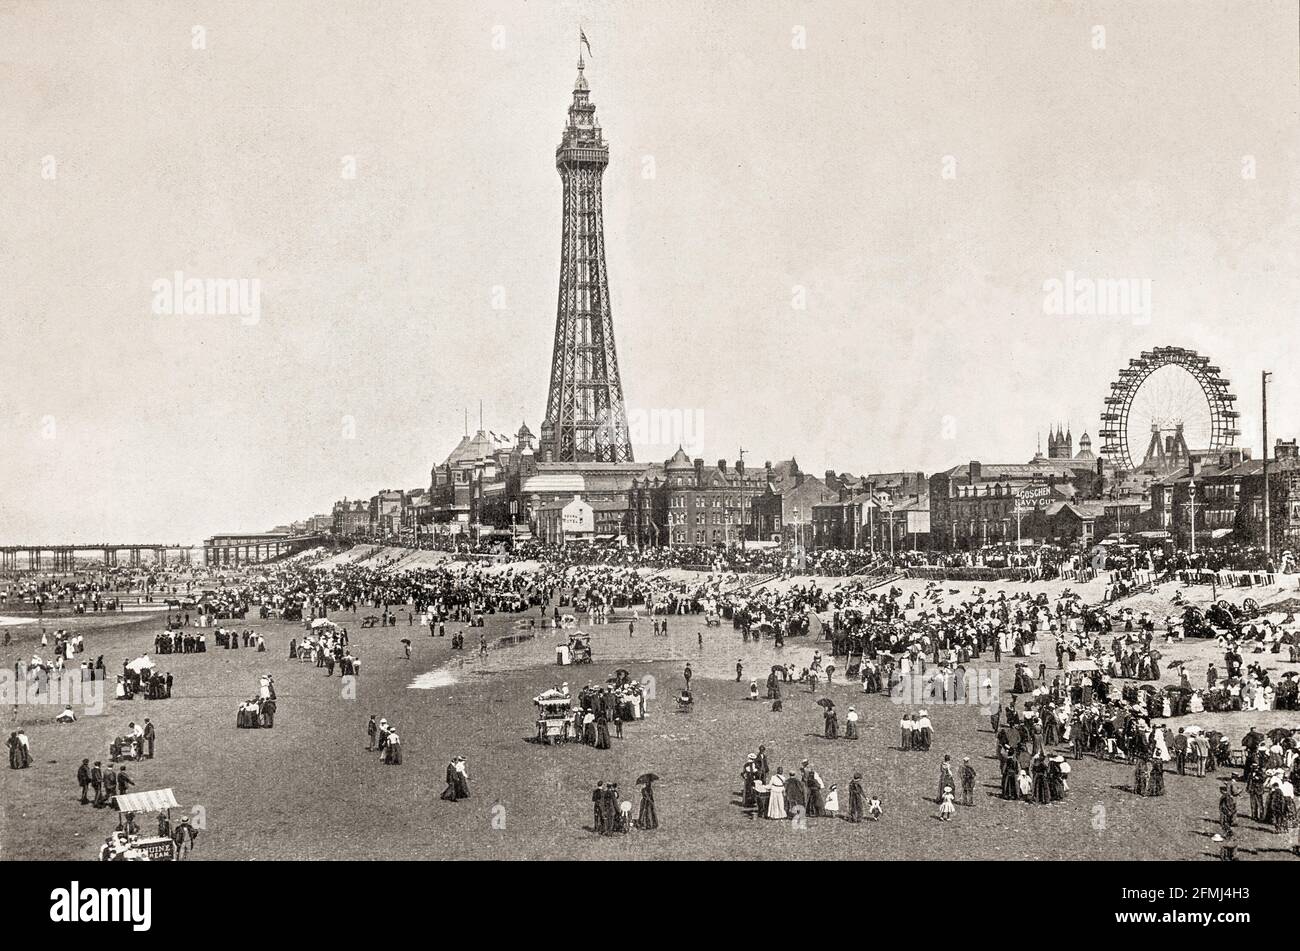 Ein Blick aus dem späten 19. Jahrhundert auf den Strand und den Ferienort Blackpool in Lancashire, England. Das Zentrum ist der Blackpool Tower, eine Touristenattraktion, die am 14. Mai 1894 der Öffentlichkeit zugänglich gemacht wurde. Inspiriert vom Eiffelturm in Paris, war der Blackpool Tower bei seiner Eröffnung das höchste von Menschenhand geschaffte Bauwerk im britischen Empire. Stockfoto